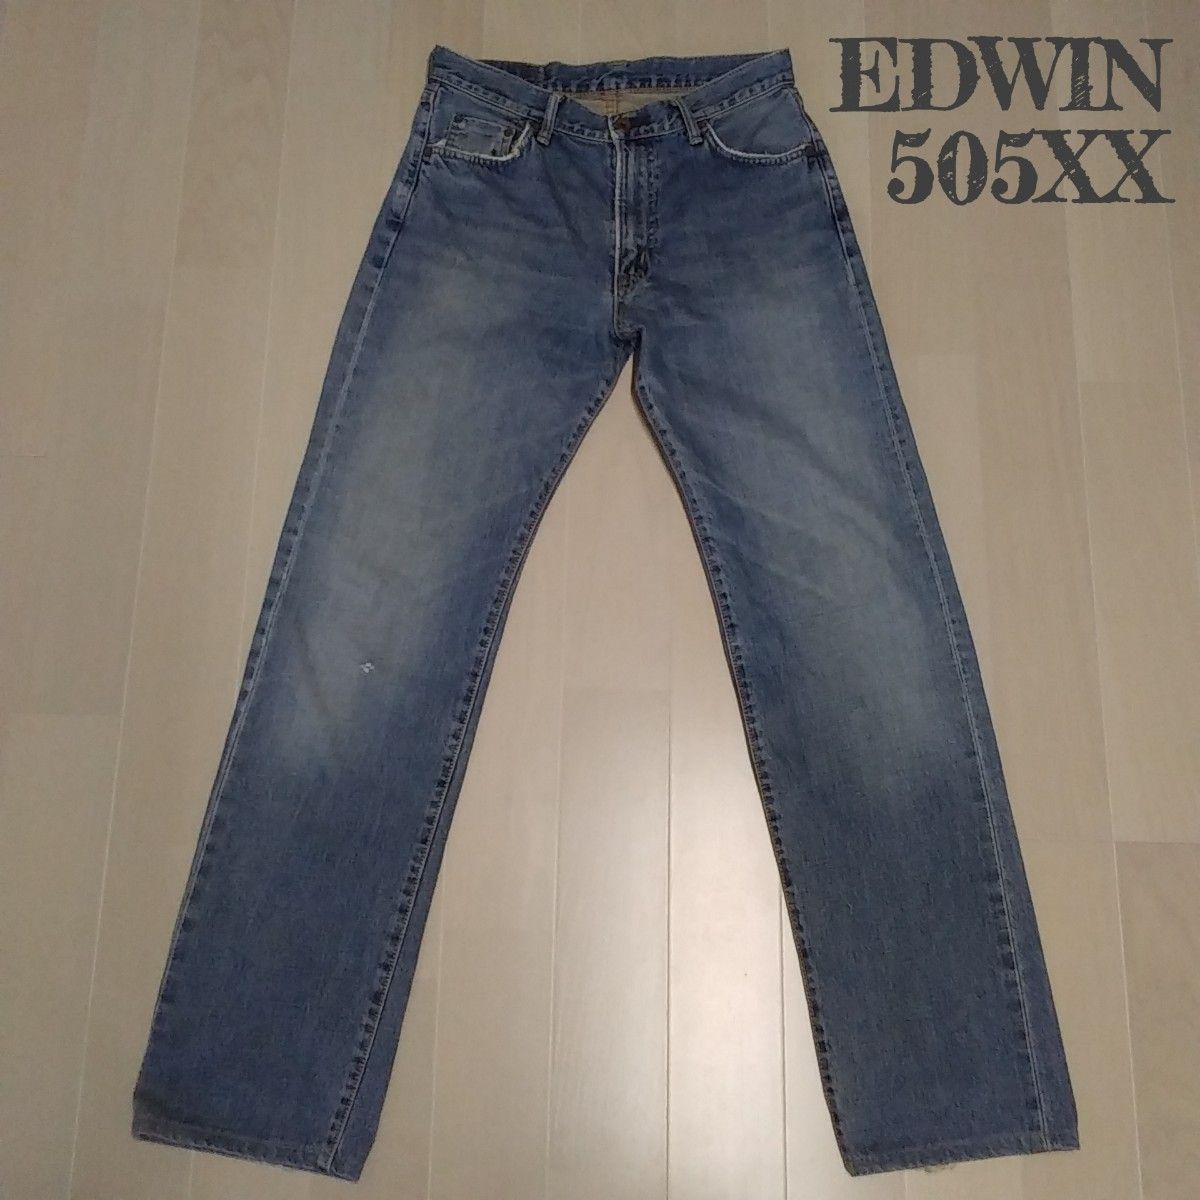 【EDWIN】エドウィン 505XX ストレート デニムパンツ ジーンズ セルビッチ 日本製 W31